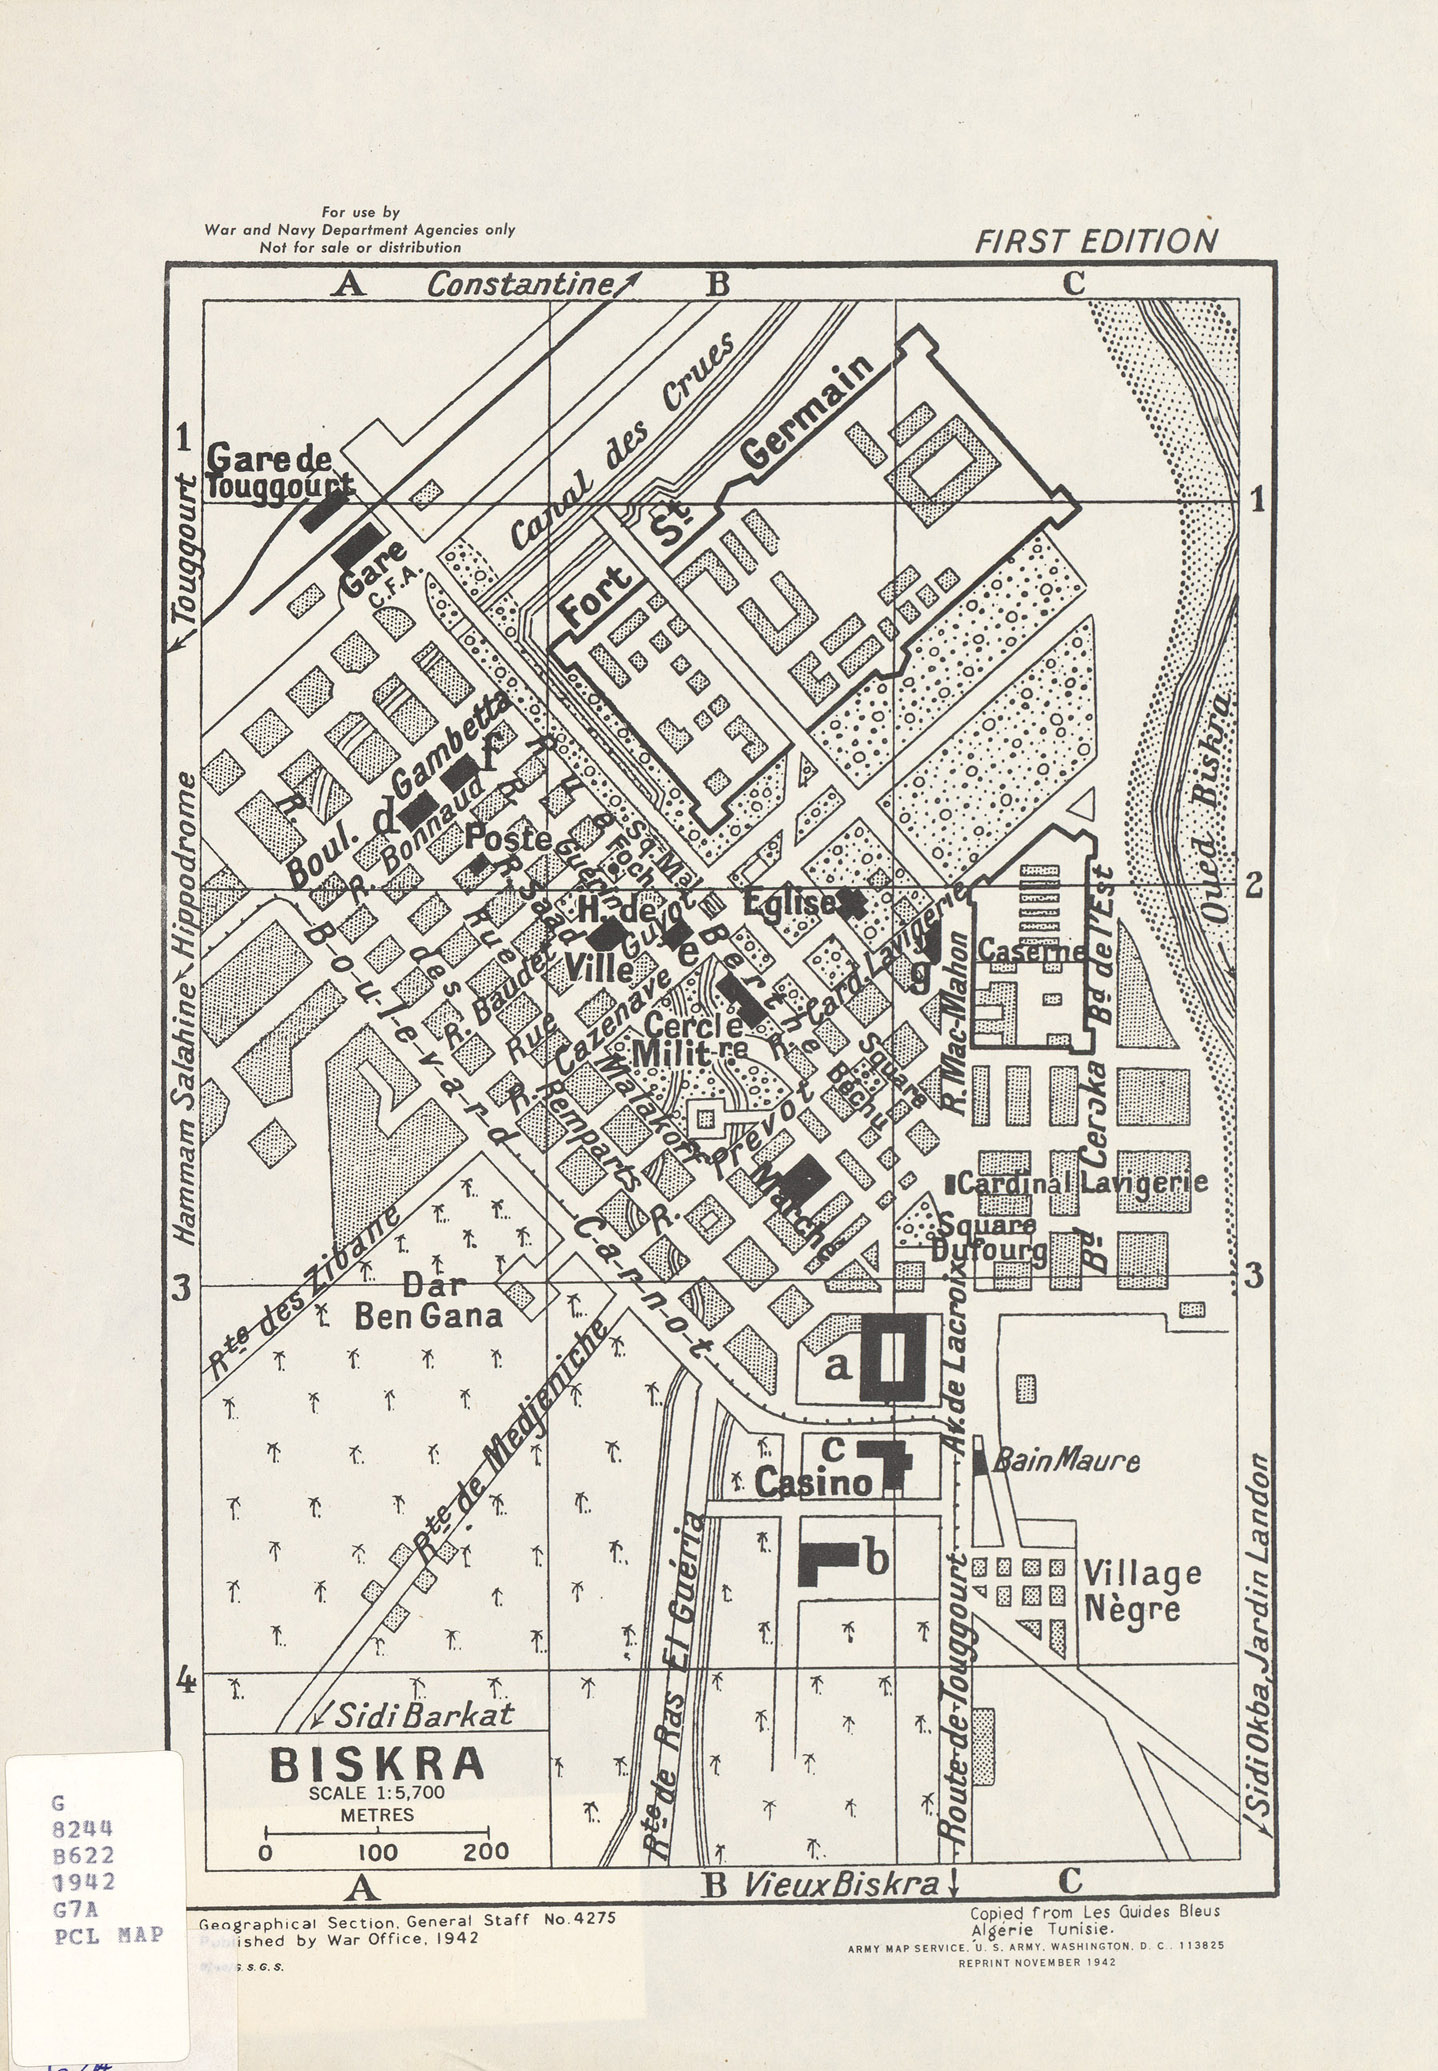 Mapa de la Ciudad de Biskra, Argelia 1942